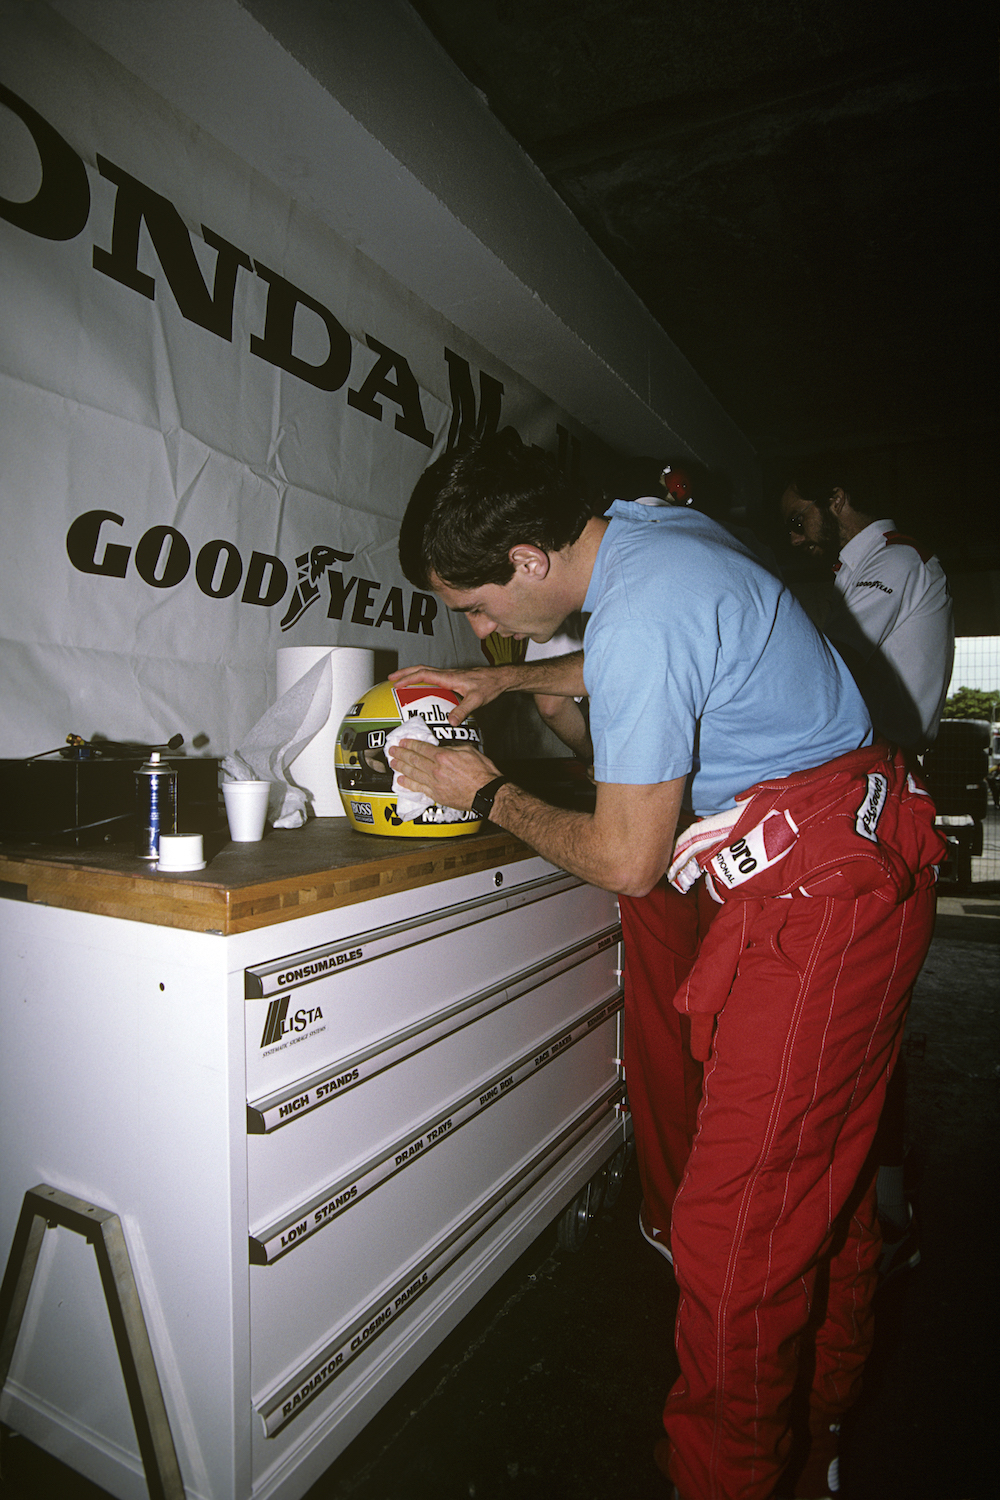 1988: Preparing his visor at the Grand Prix of France at Paul Ricard